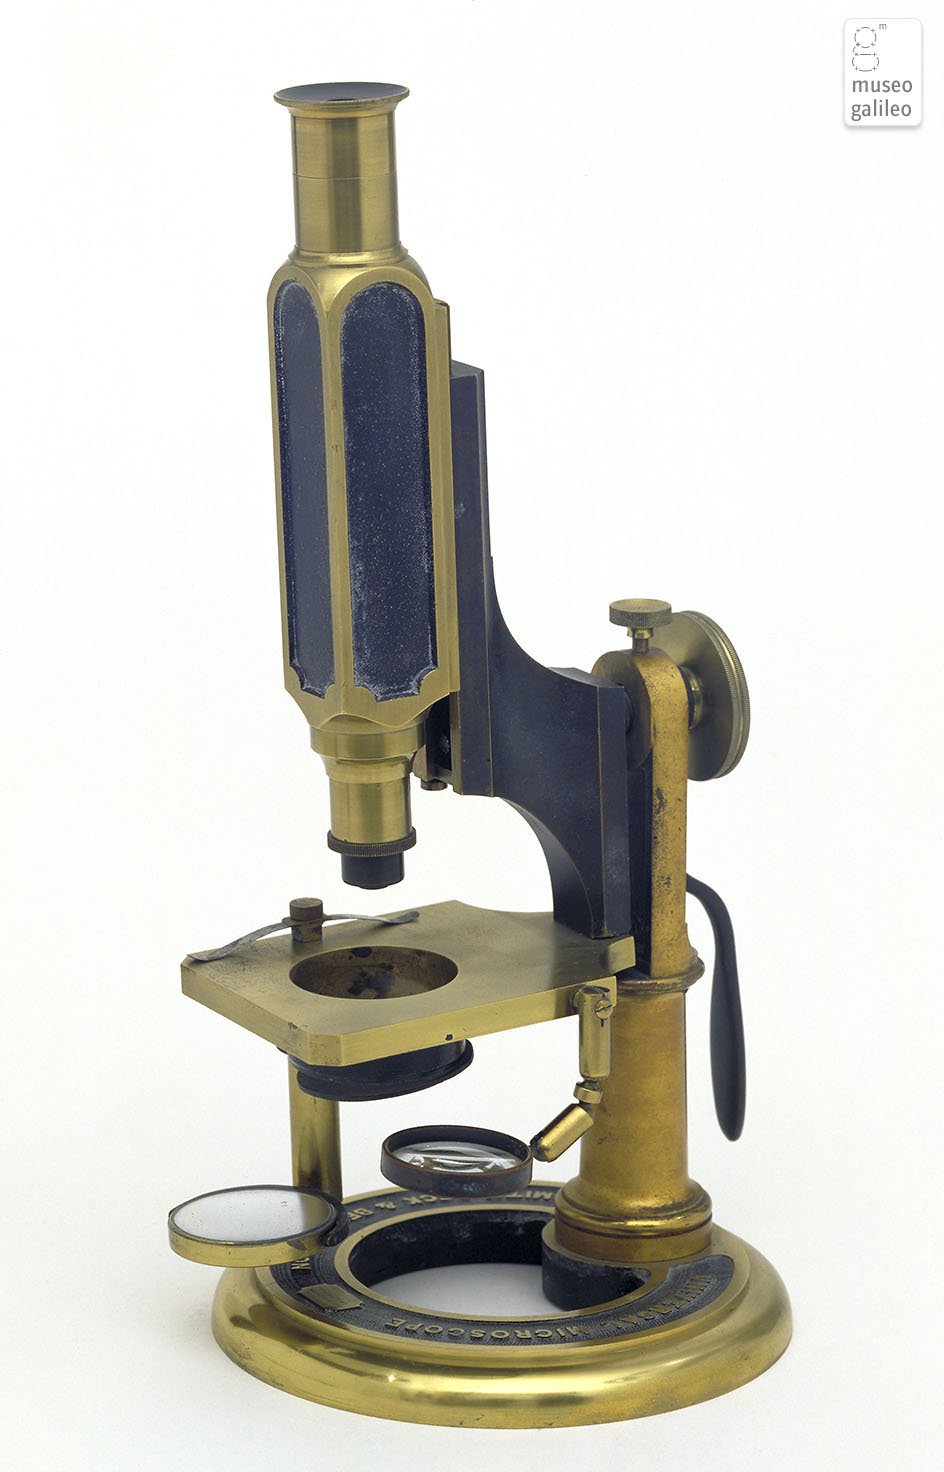 Compound microscope (Inv. 3259)